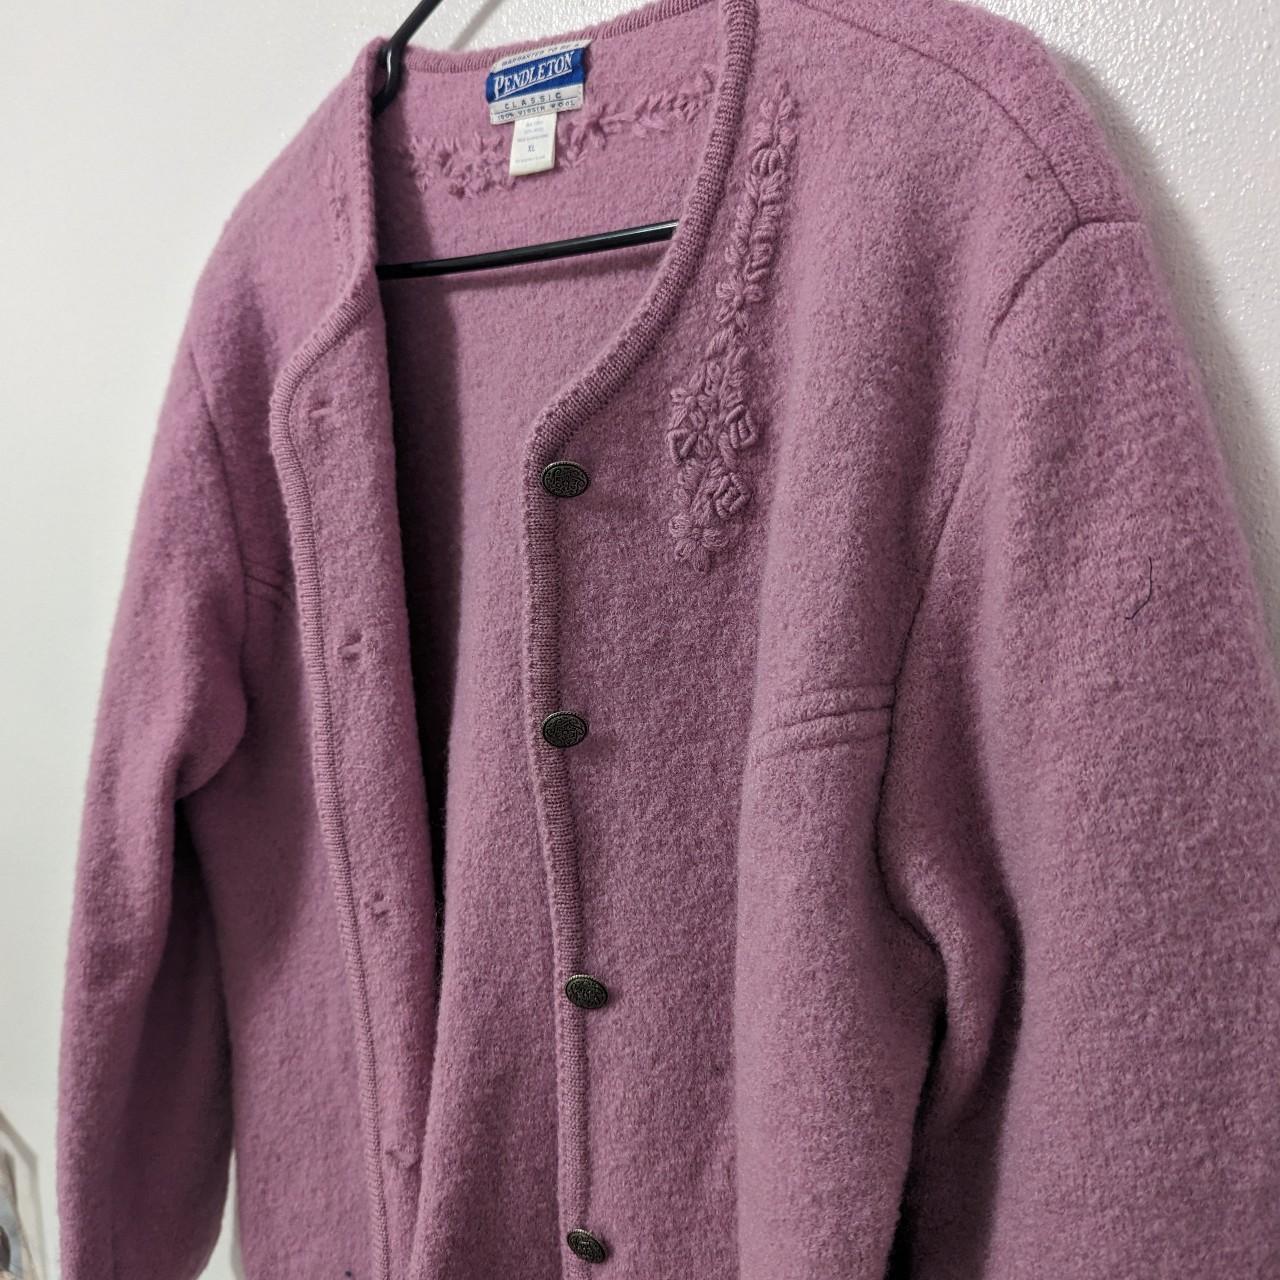 Vintage Pendleton Classic Wool Coat #vintage... - Depop